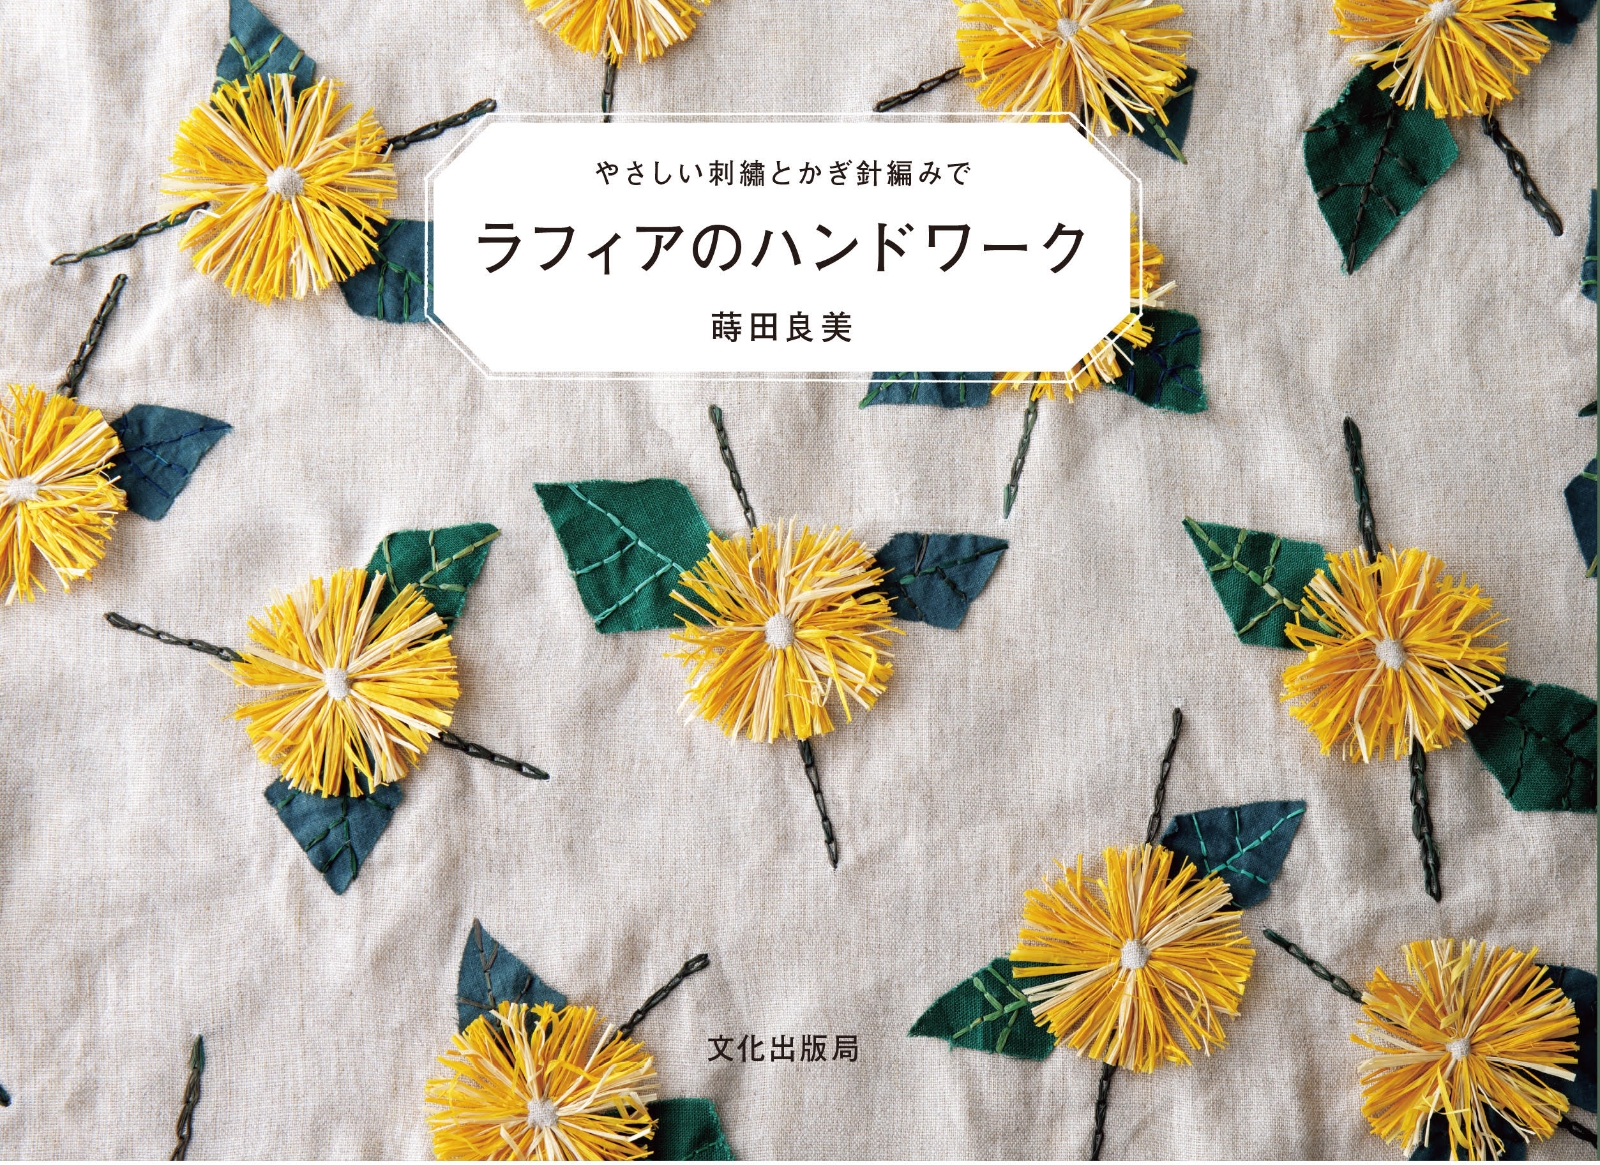 楽天ブックス: ラフィアのハンドワーク - やさしい刺繍とかぎ針編みで - 蒔田 良美 - 9784579116782 : 本